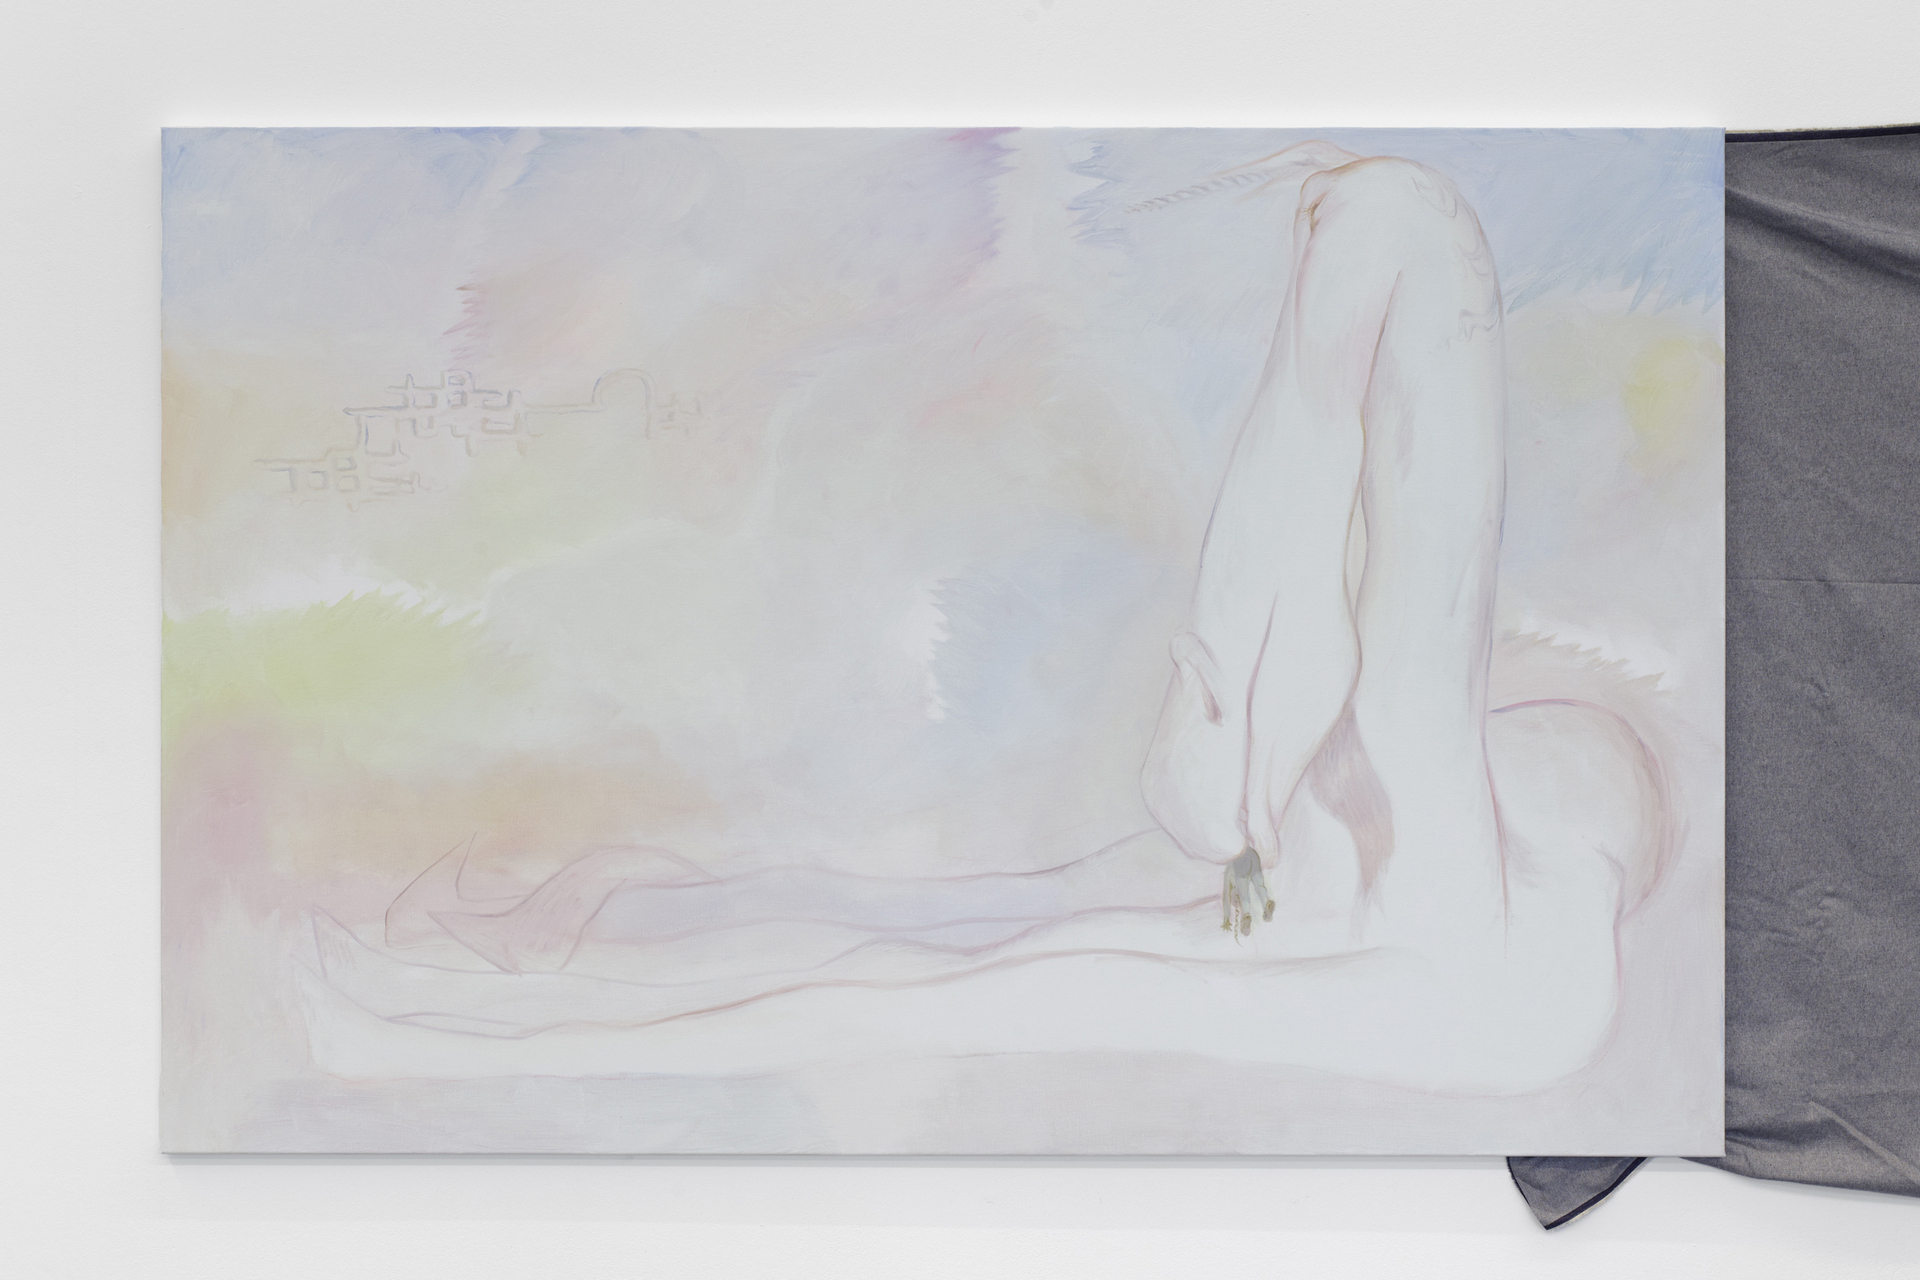 Alison Yip, Possession, 2020, oil on canvas, 216 x 142 cm, exhibition view, Dortmunder Kunstverein Photo: Simon Vogel